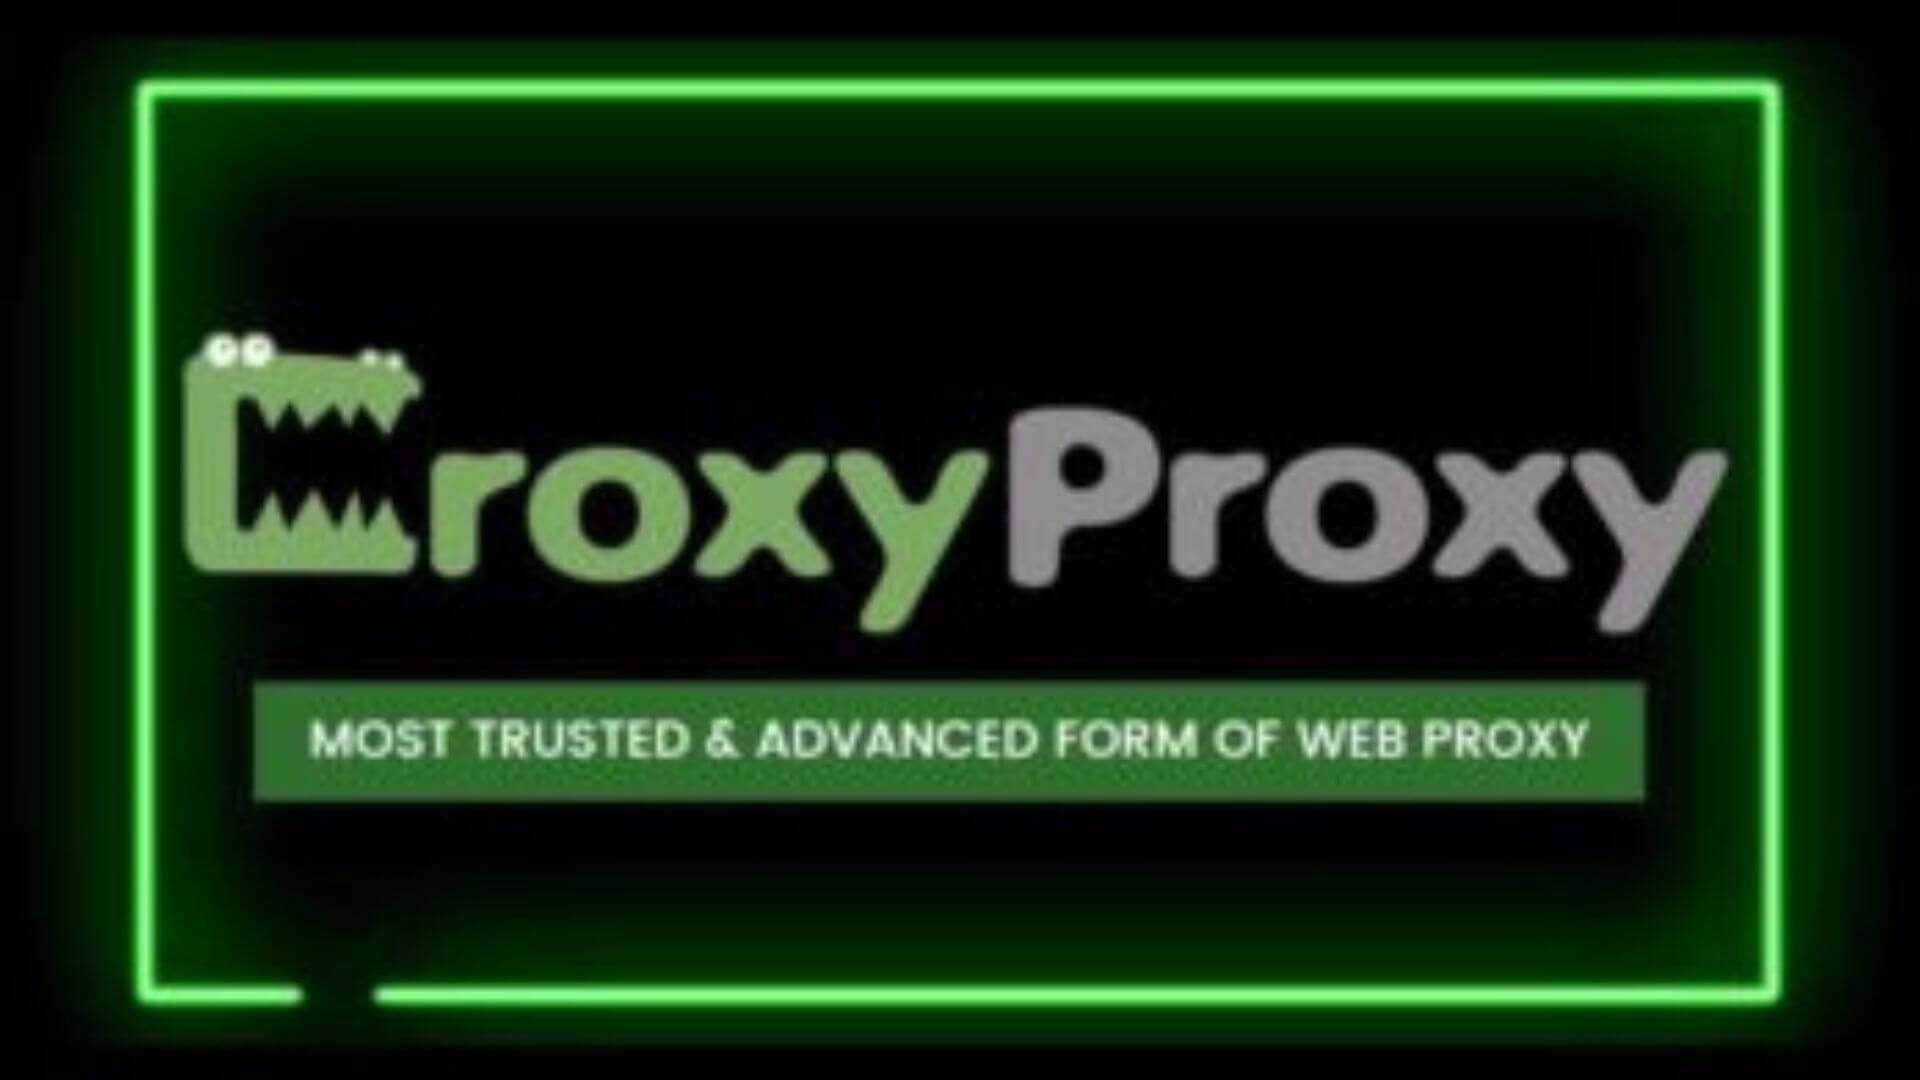 CroxyProxy site